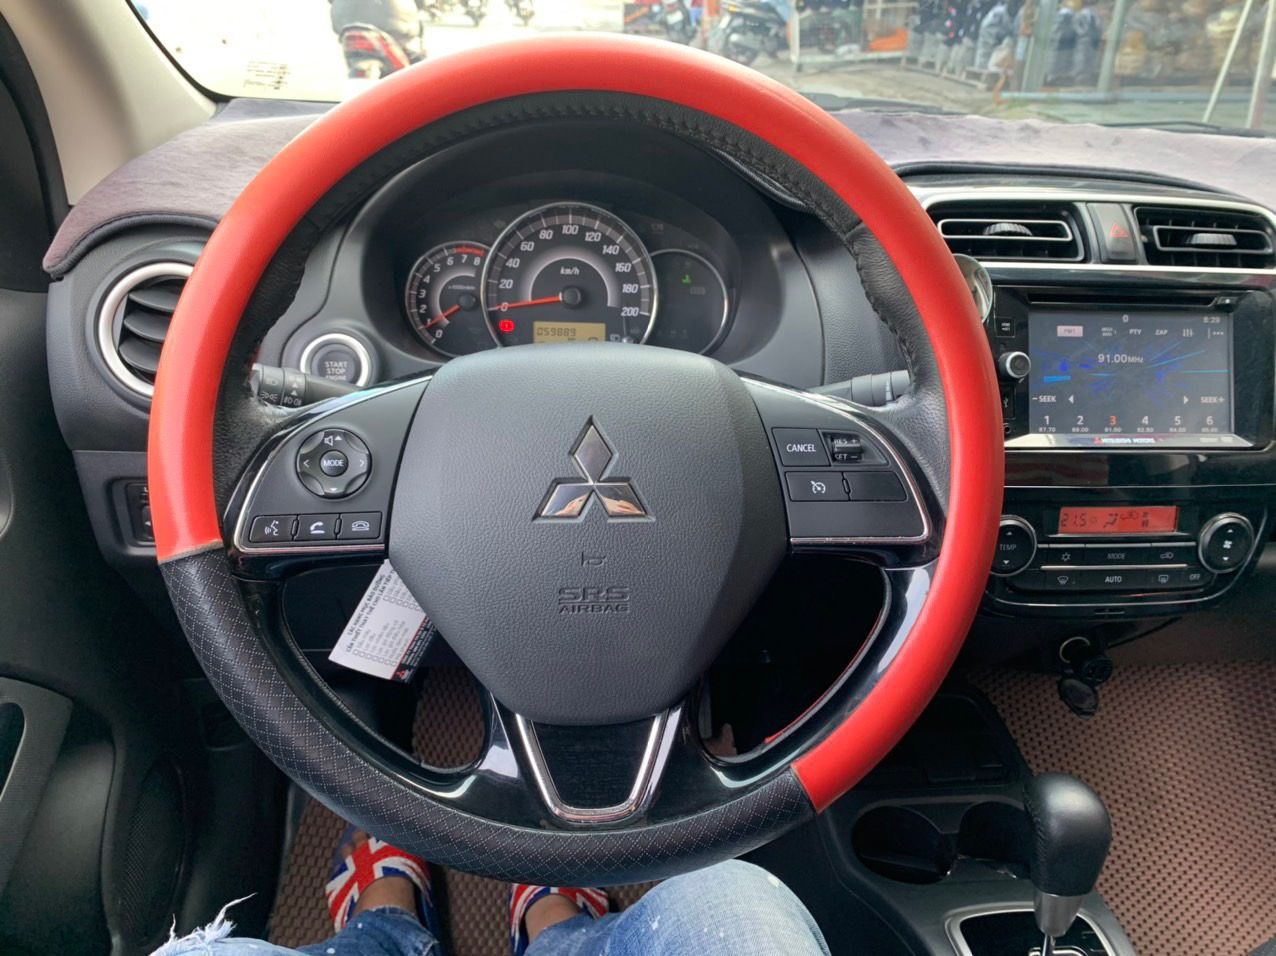 Mitsubishi Attrage CVT  2019 - Attrage 2019 CVT xe đẹp giá hợp lý